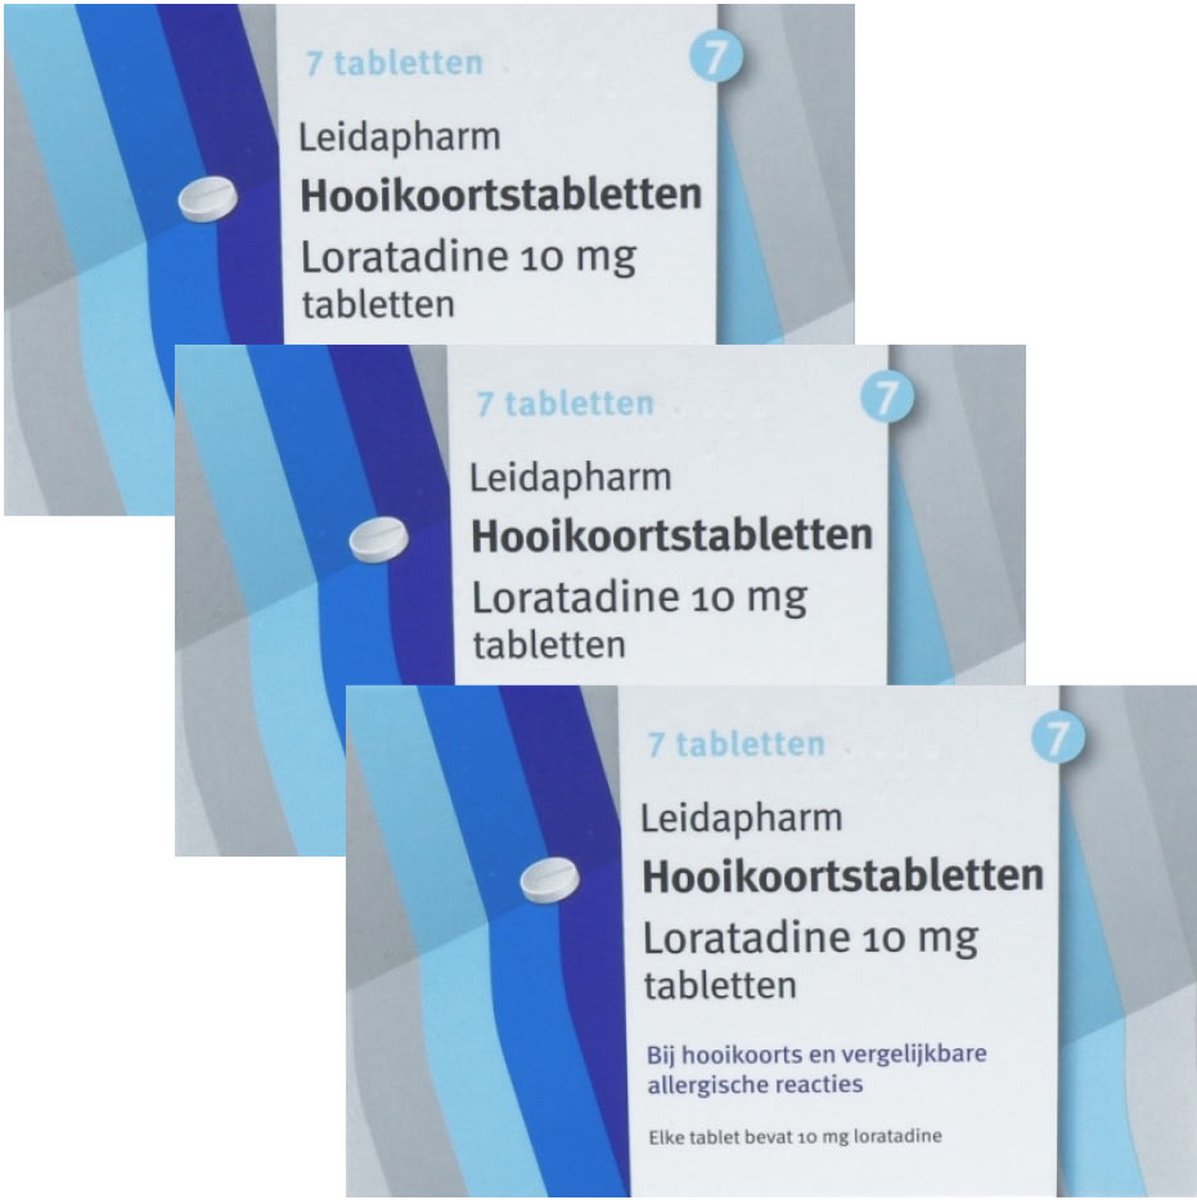 Leidapharm Hooikoortstabletten Loratadine 10 mg - 3 x 7 tabletten - Leida Pharma